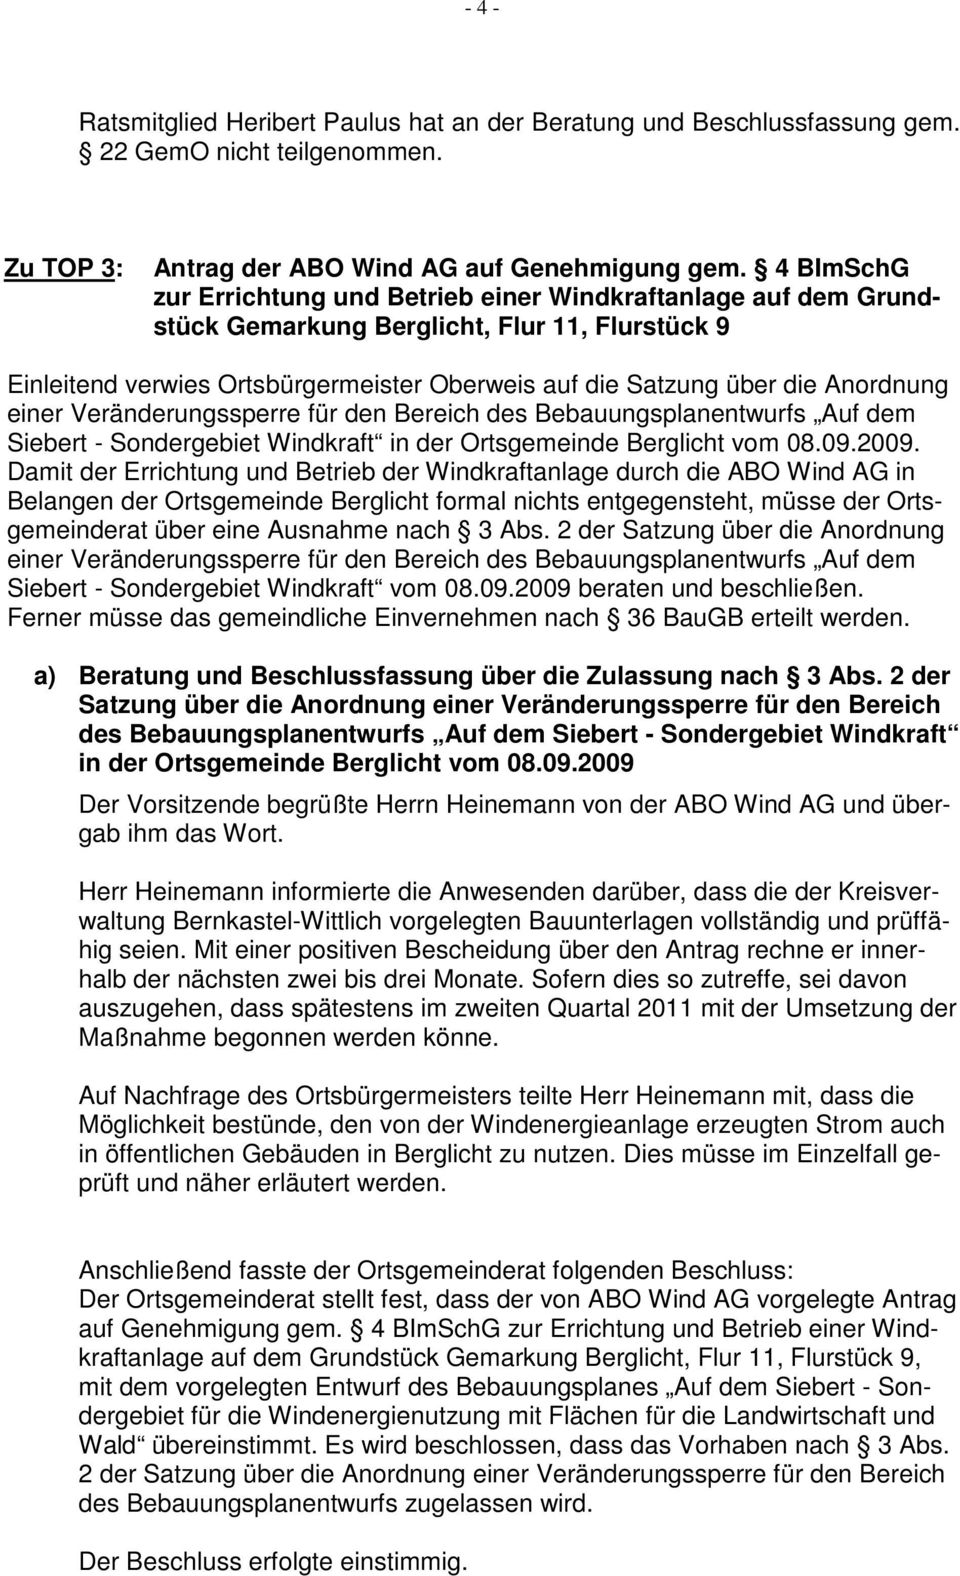 Anordnung einer Veränderungssperre für den Bereich des Bebauungsplanentwurfs Auf dem Siebert - Sondergebiet Windkraft in der Ortsgemeinde Berglicht vom 08.09.2009.